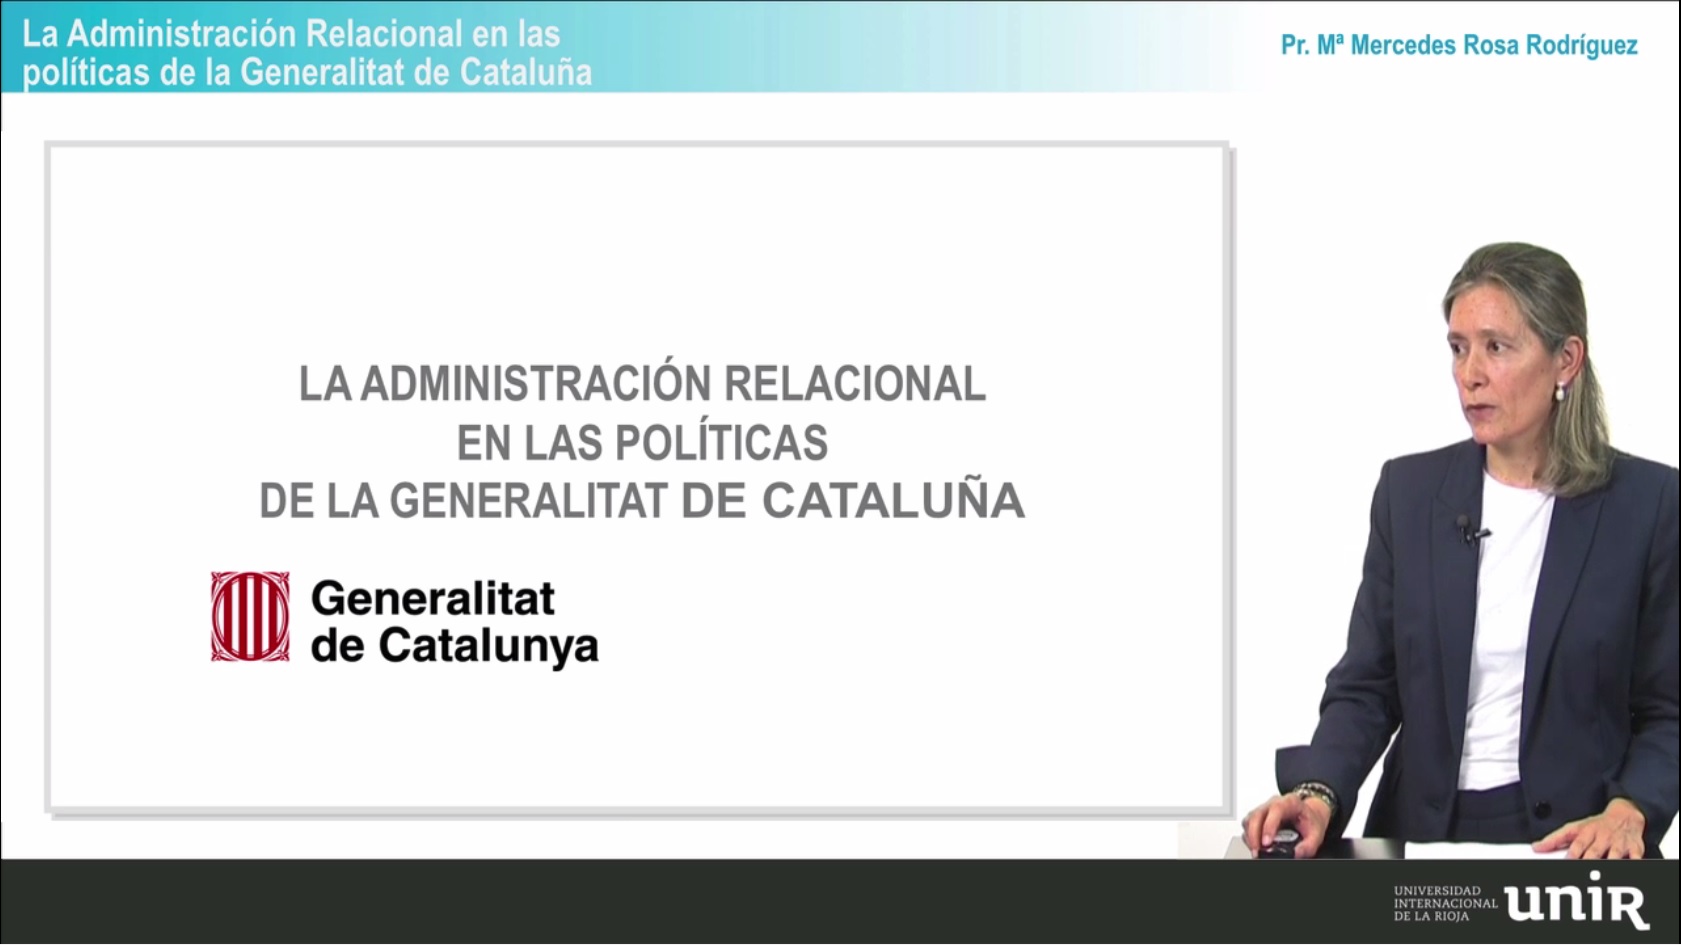 La-Administracion-Relacional-en-las-politicas-de-la-Generalitat-de-Cataluna